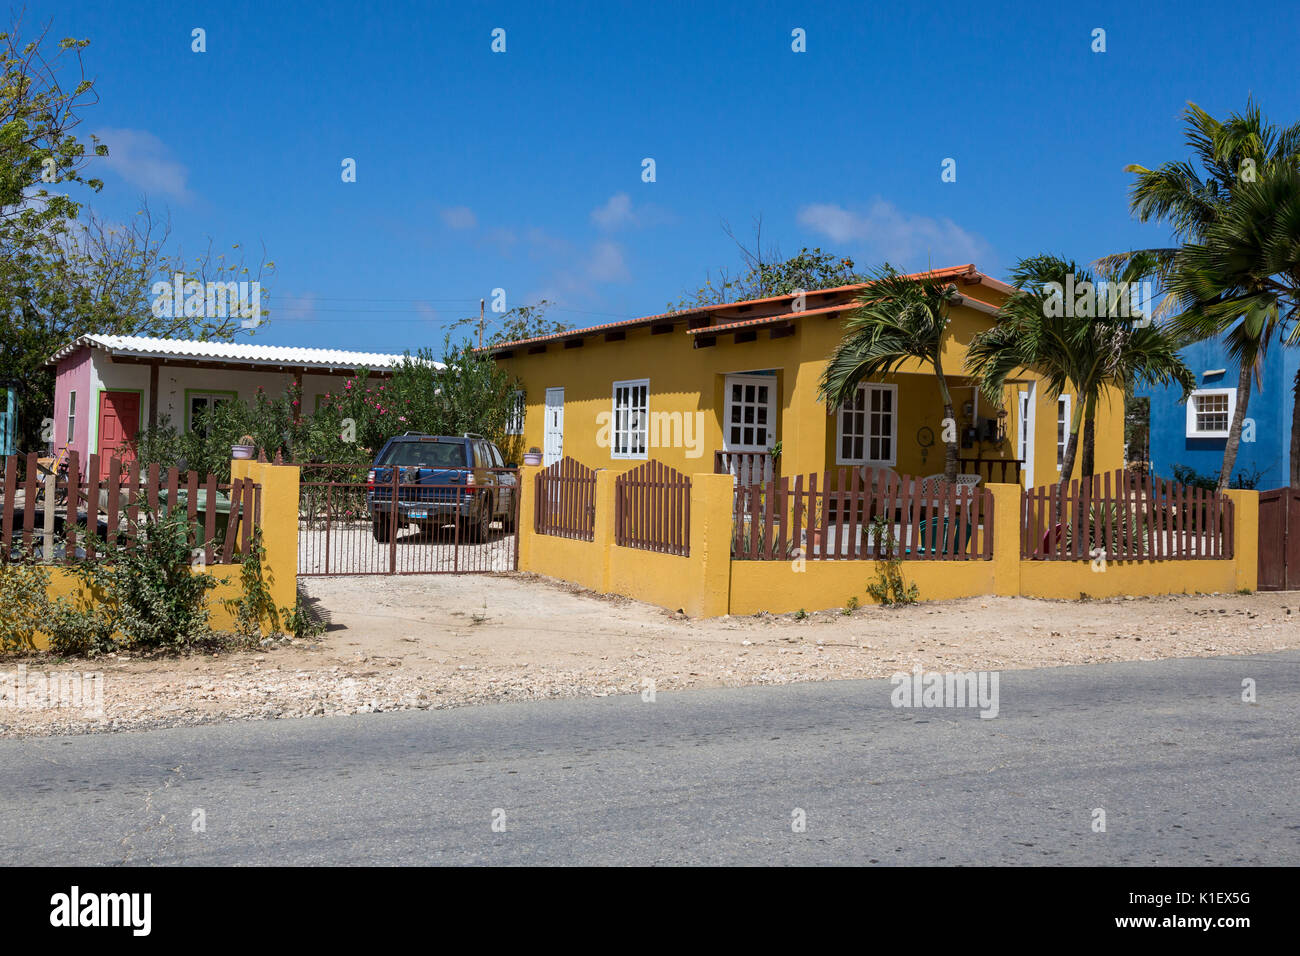 Kralendijk, Bonaire, Antillas Neerlandesas de sotavento. Residencia de clase media. Foto de stock